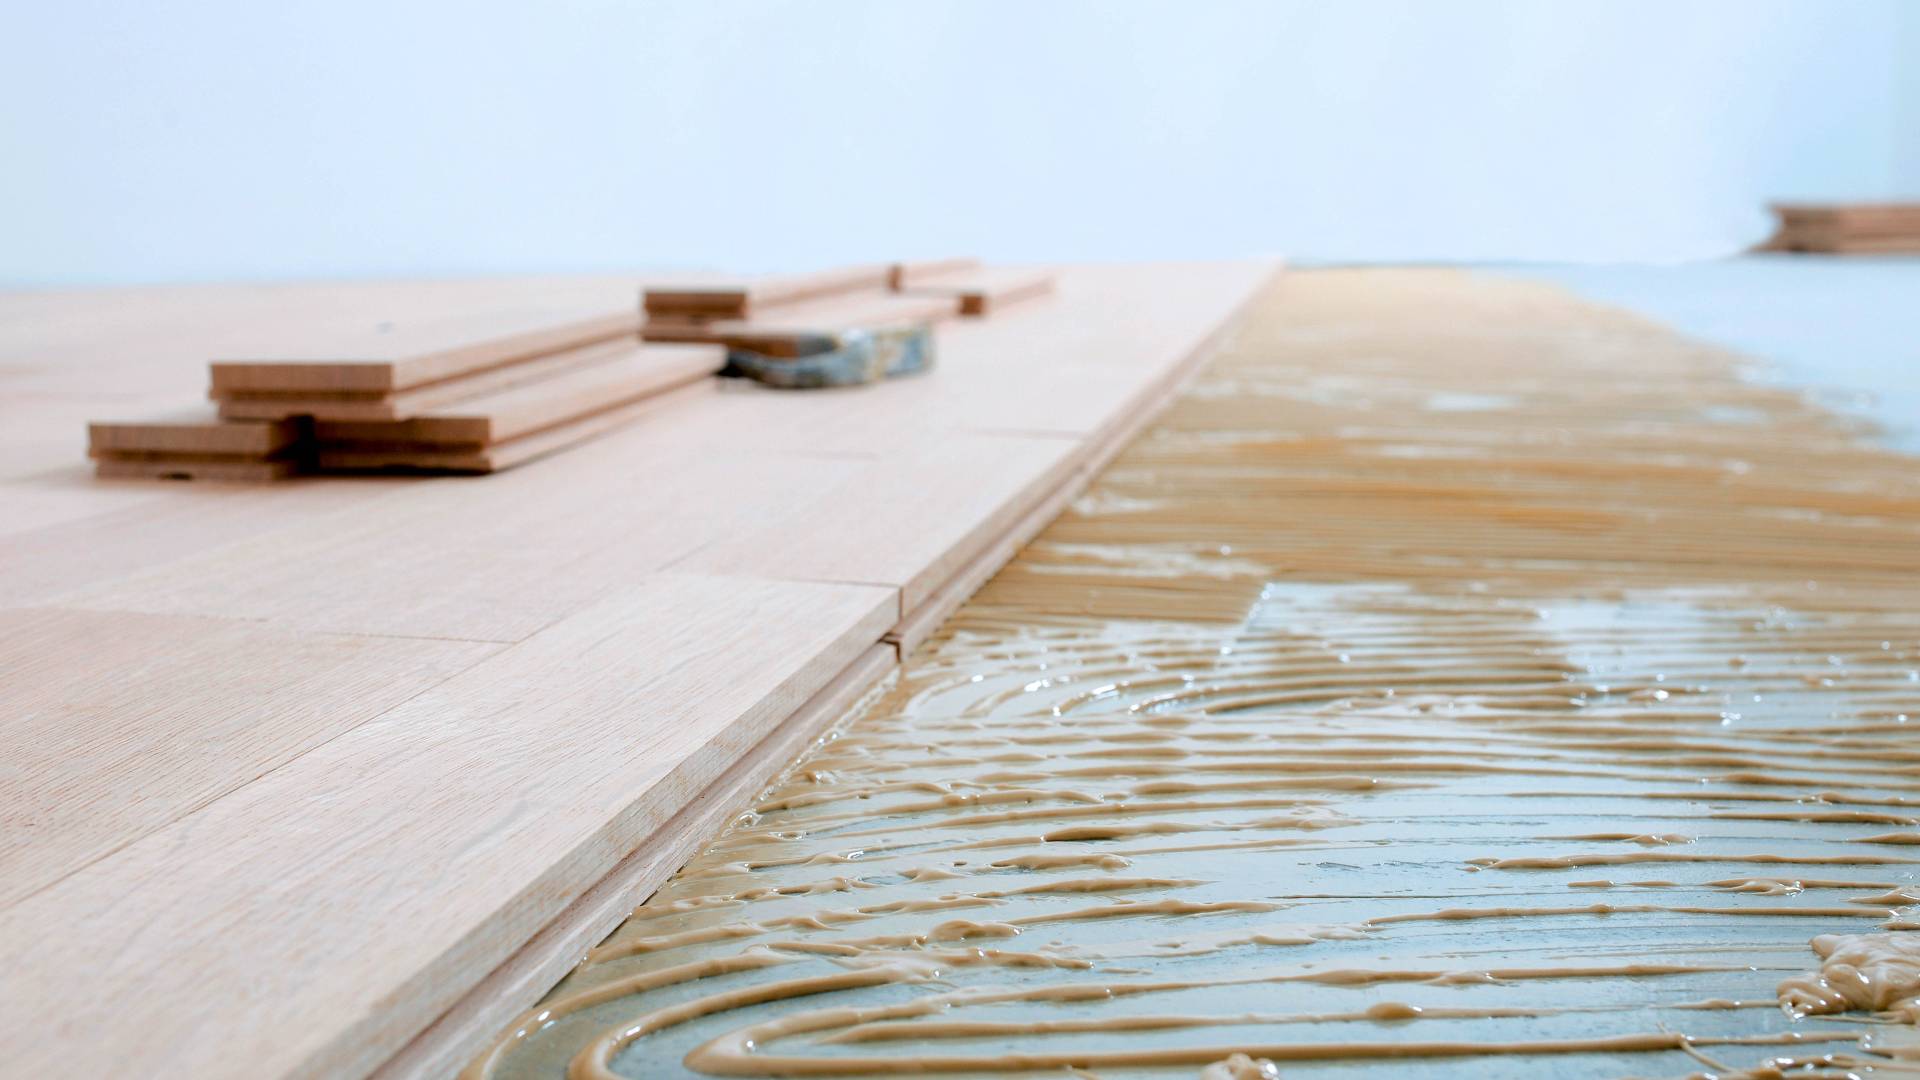 Wood-flooring adhesive